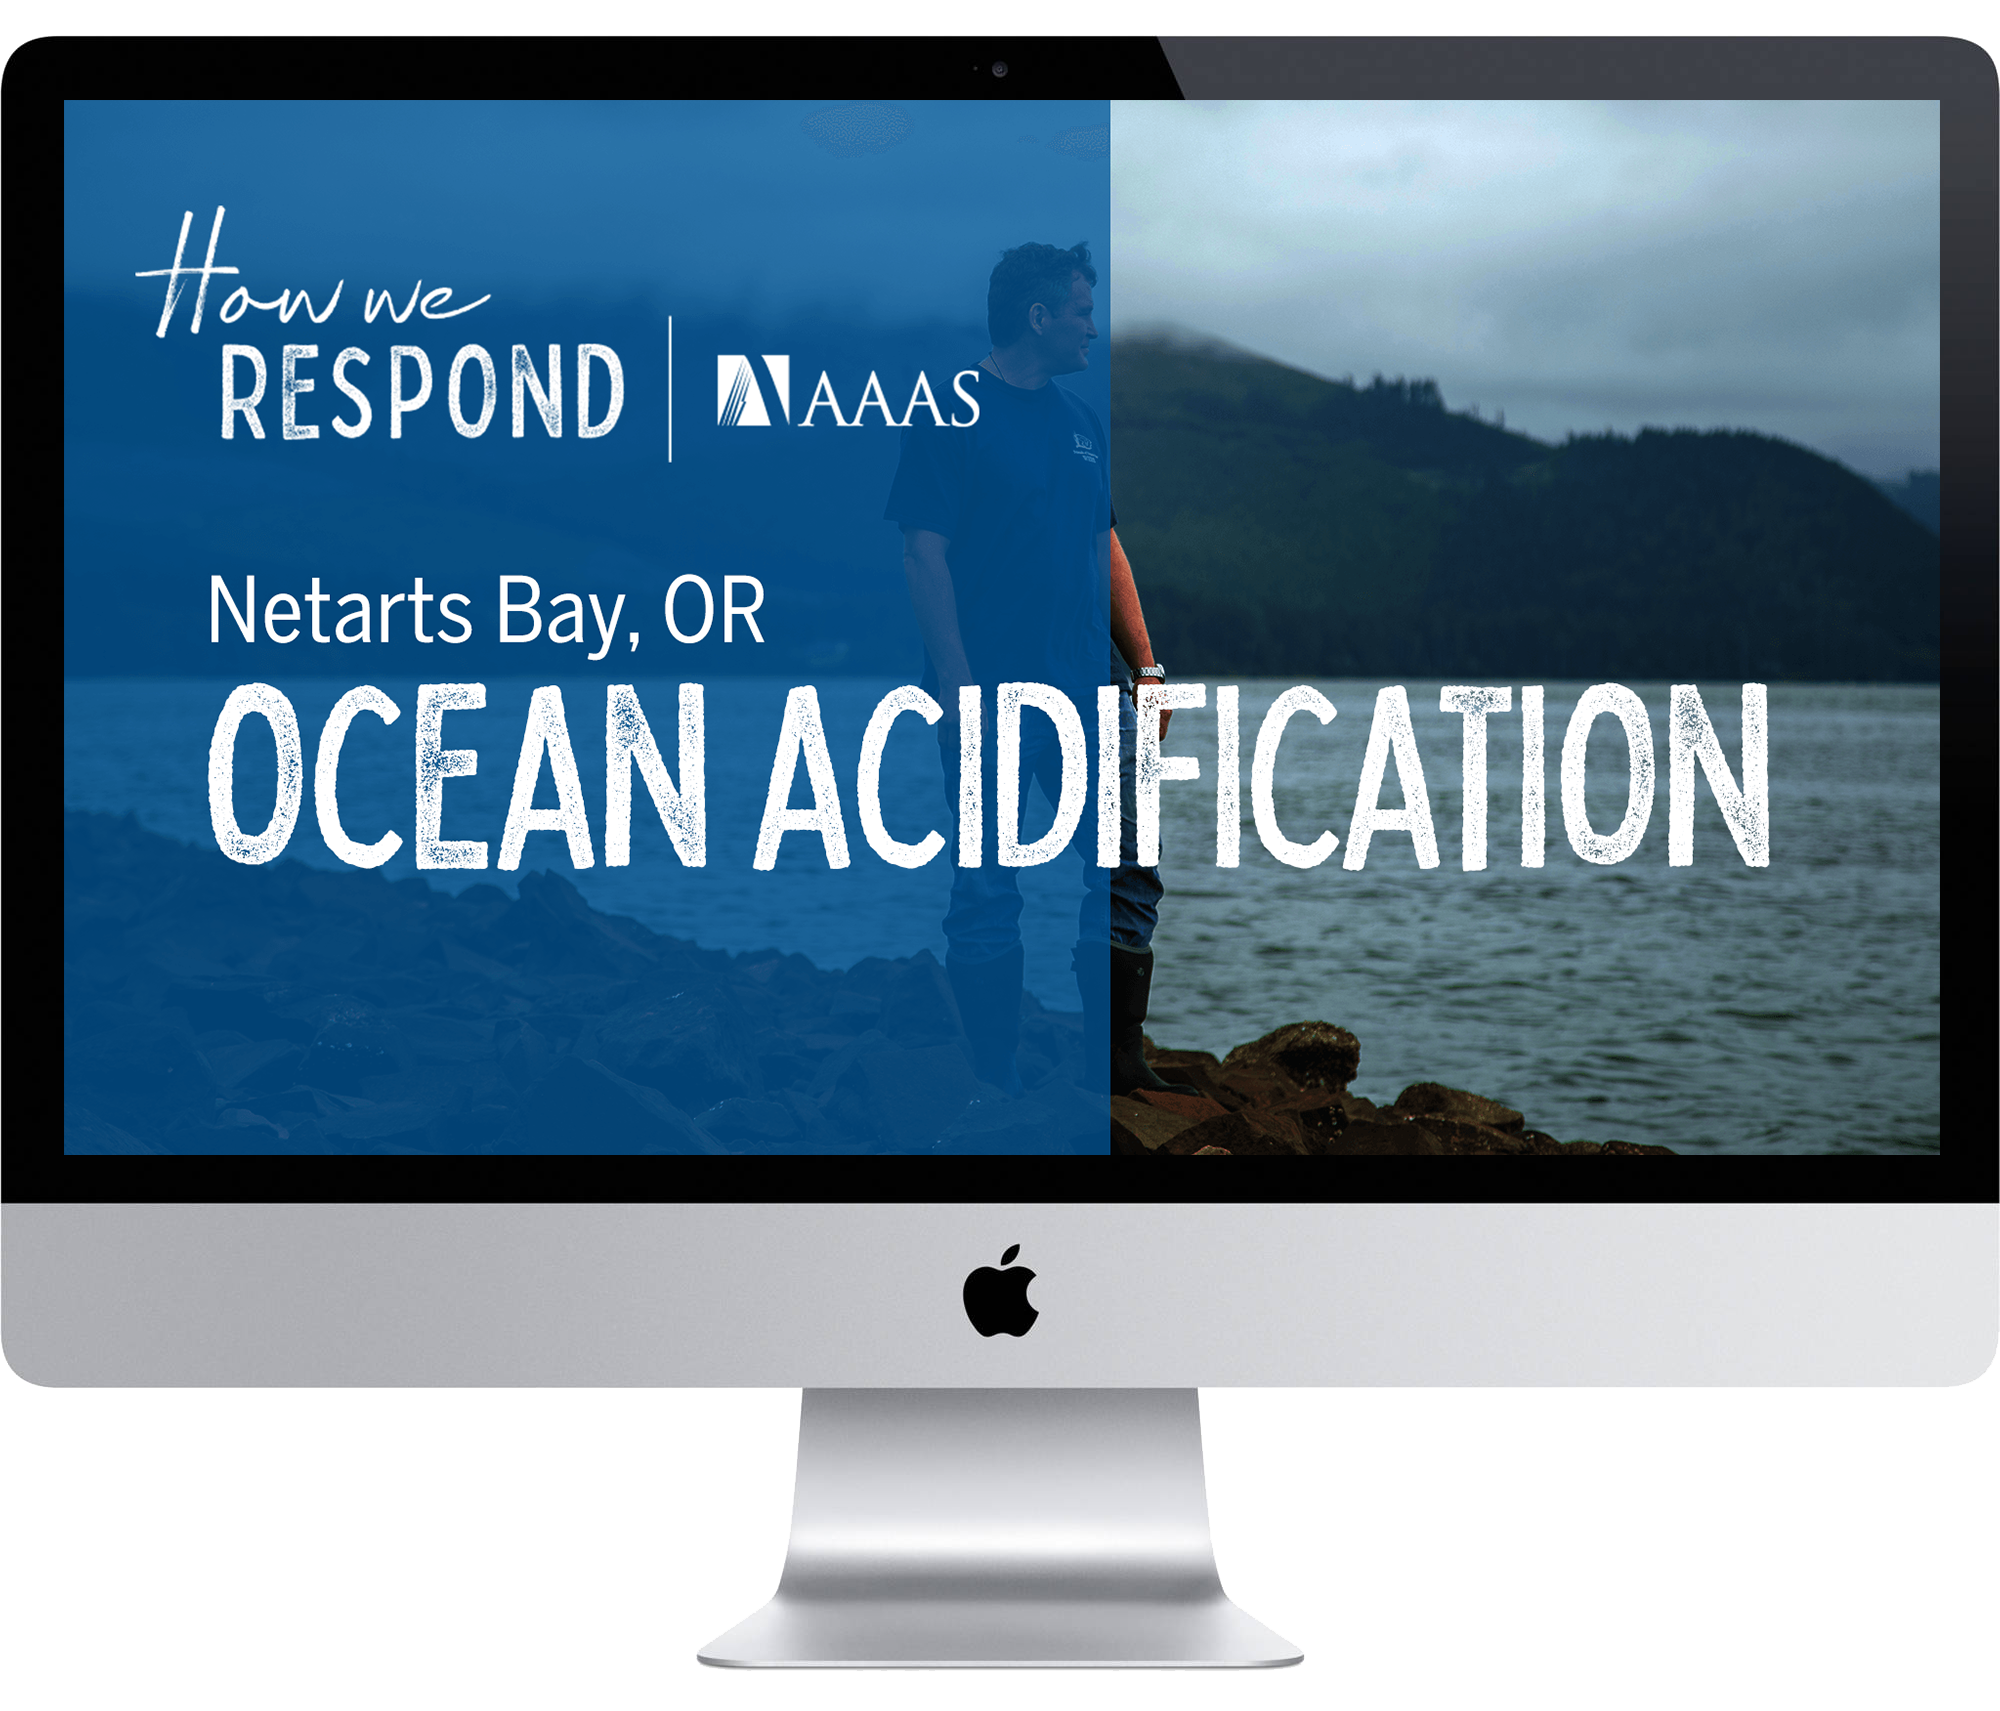 Netarts Bay, OR - Acidification